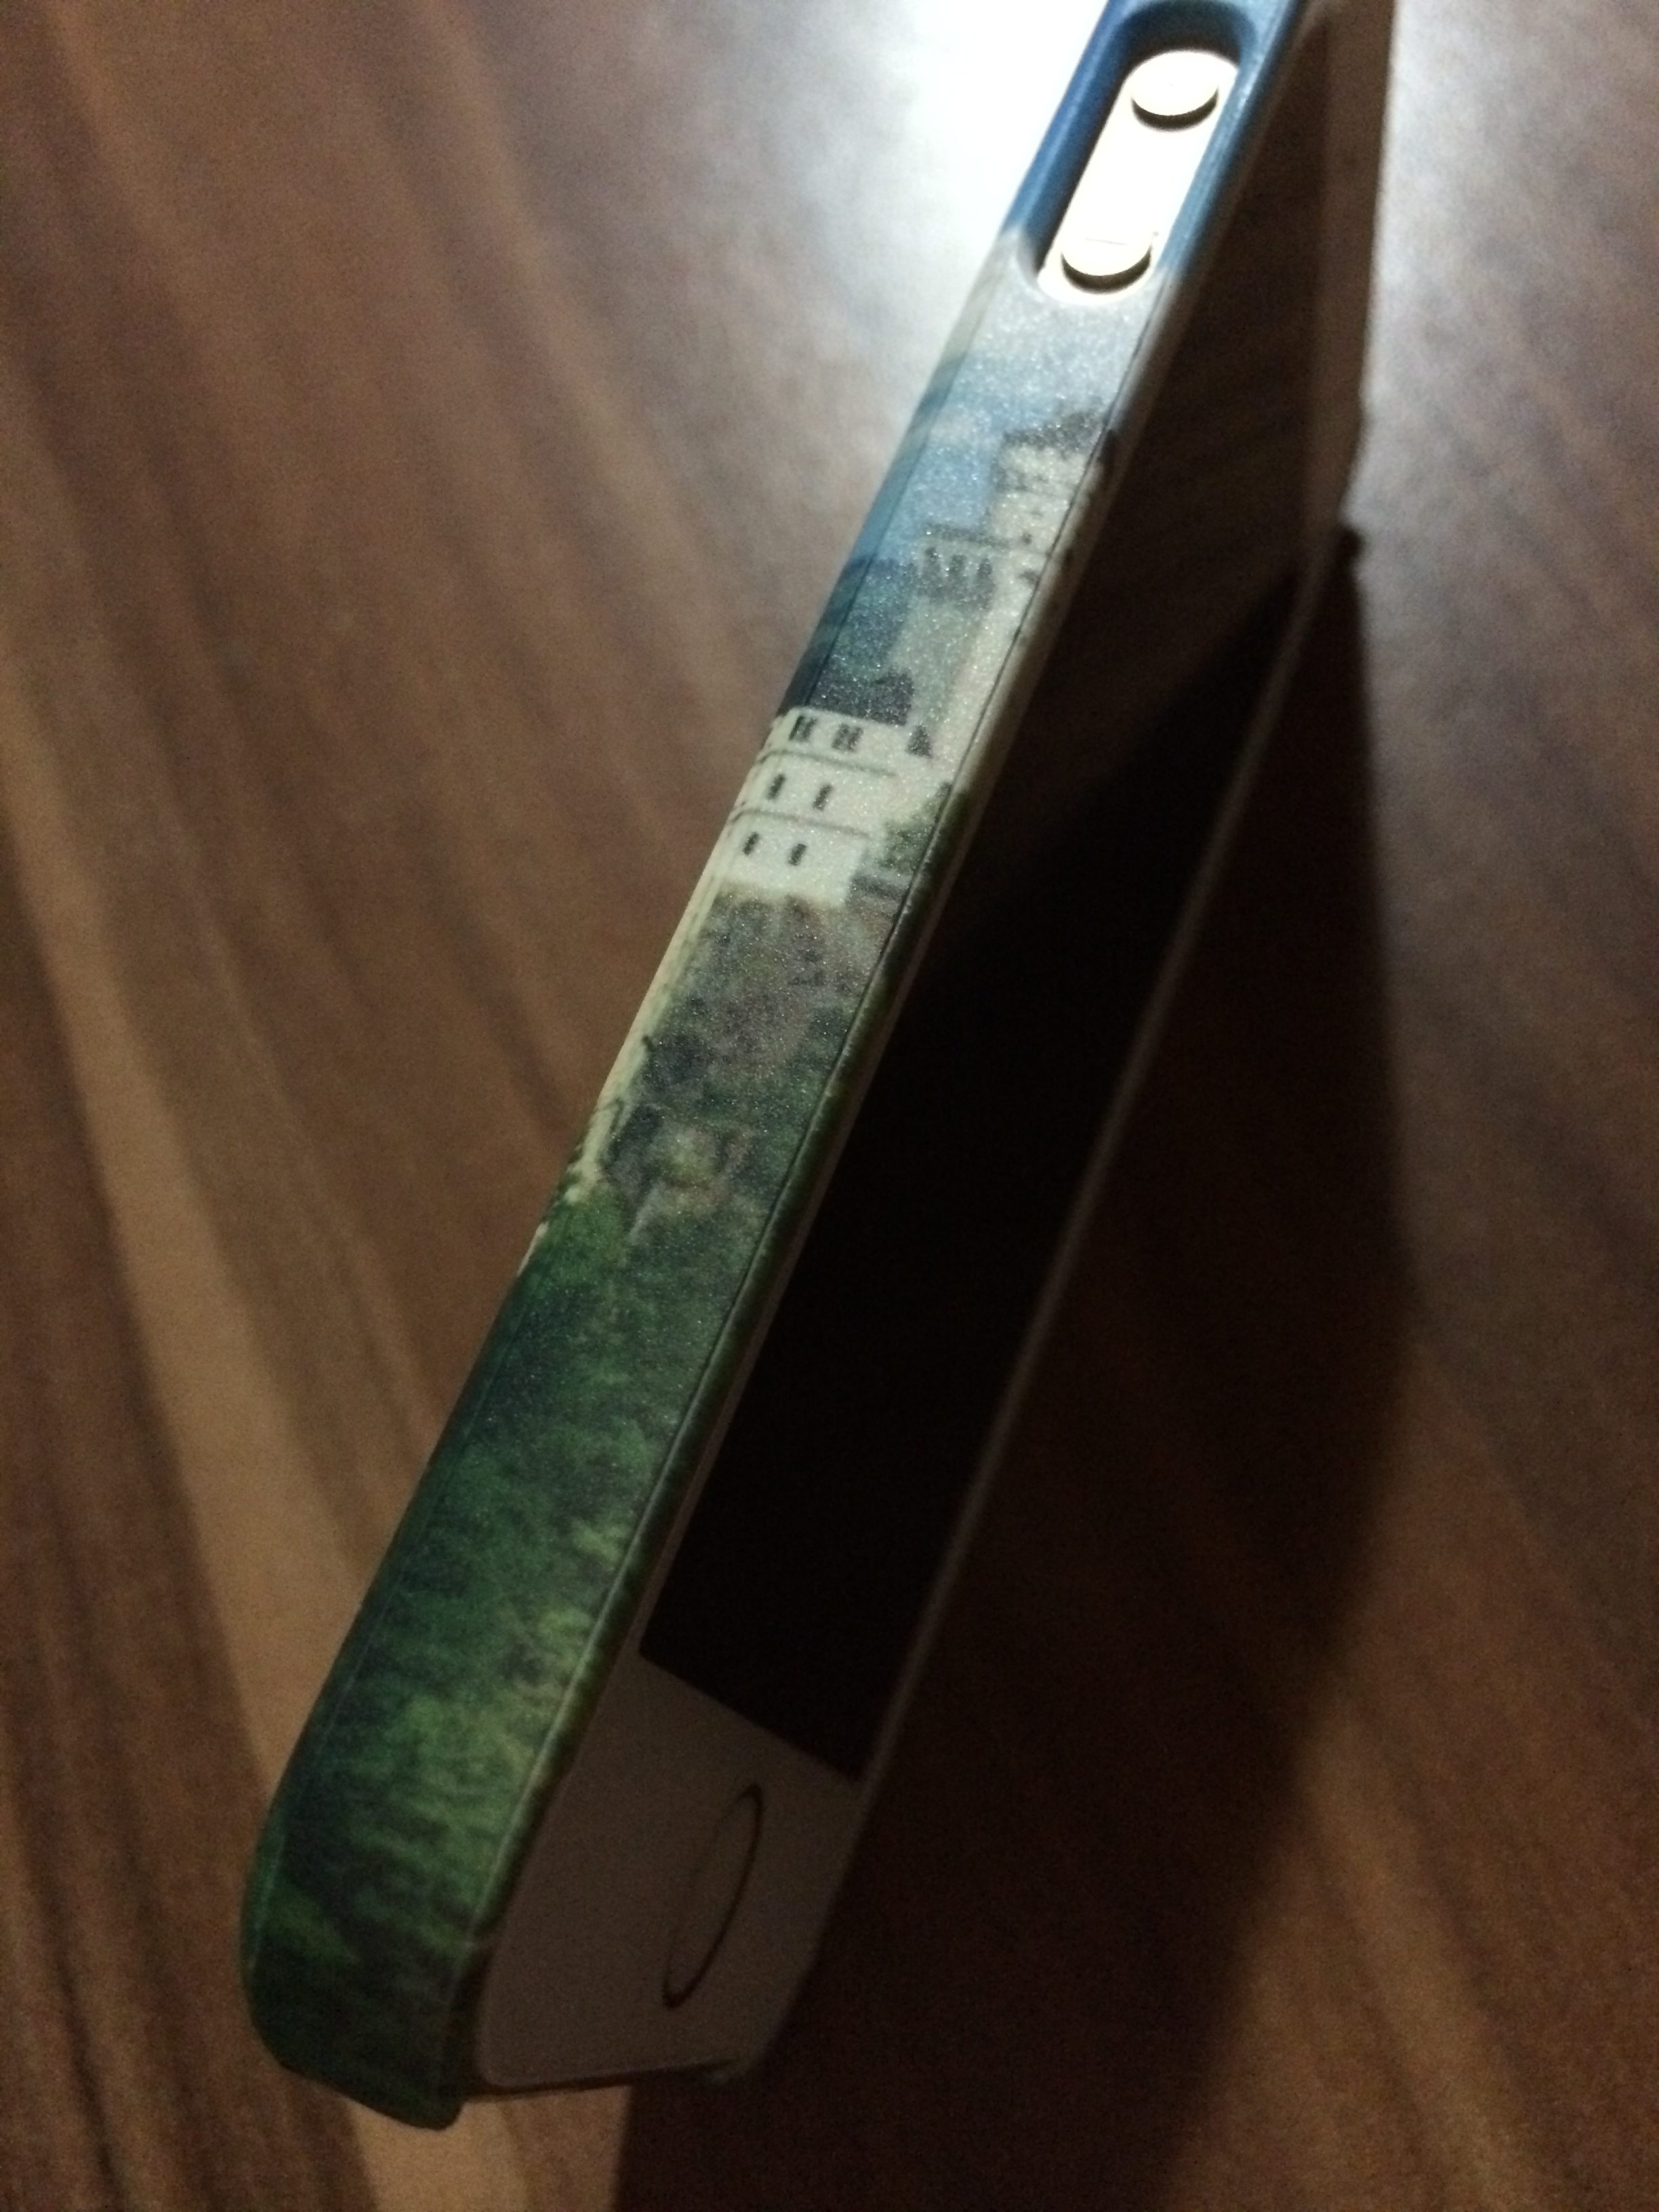 Caseable - Die Premium iPhone 5s Hülle mit Besonderheiten im Test 3